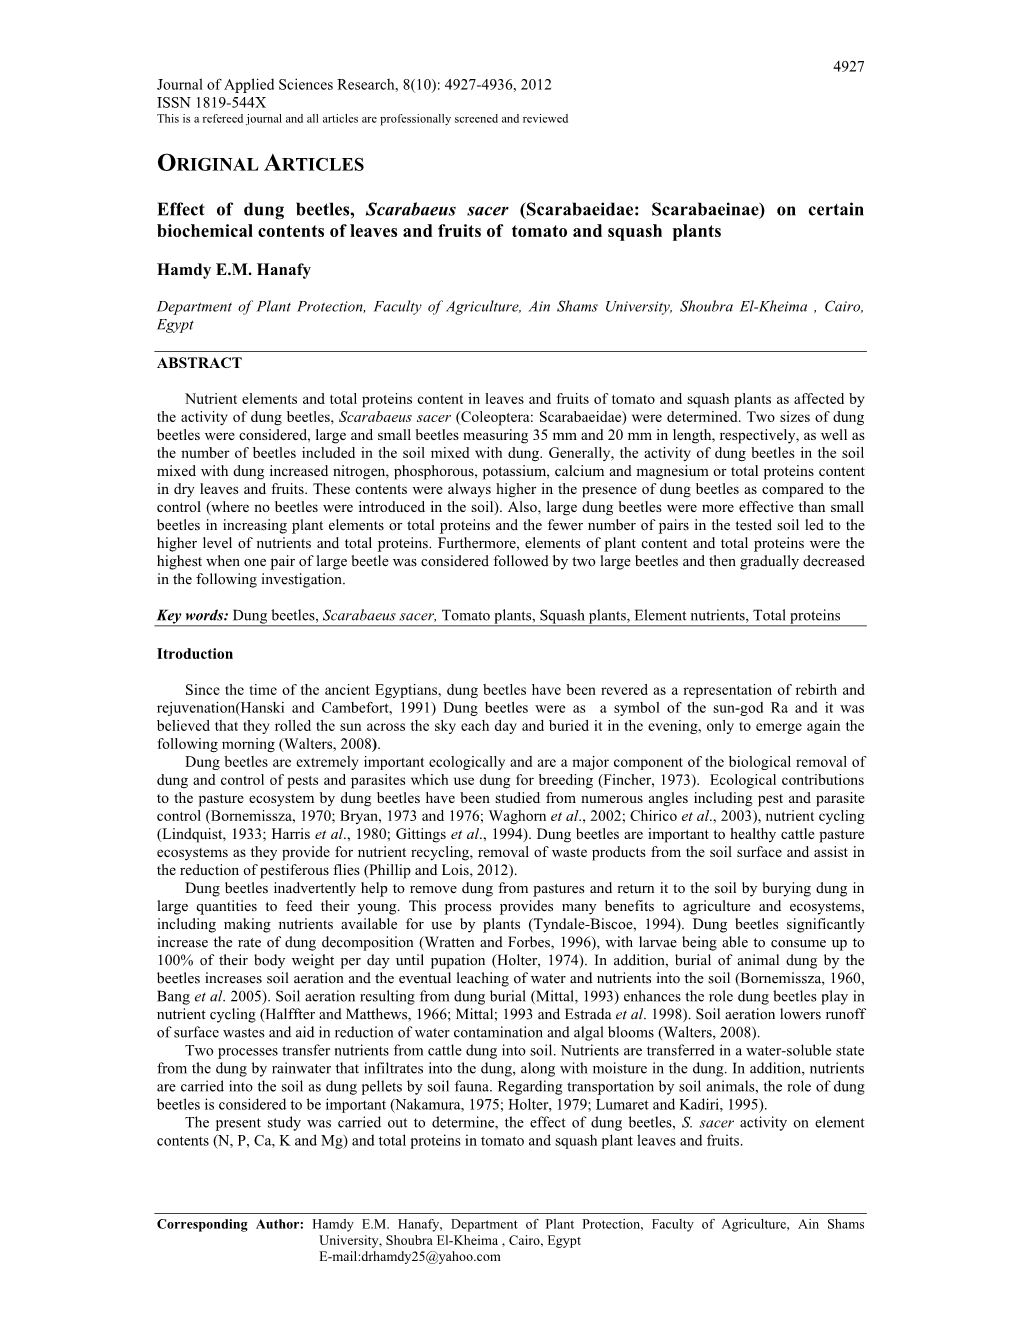 ORIGINAL ARTICLES Effect of Dung Beetles, Scarabaeus Sacer